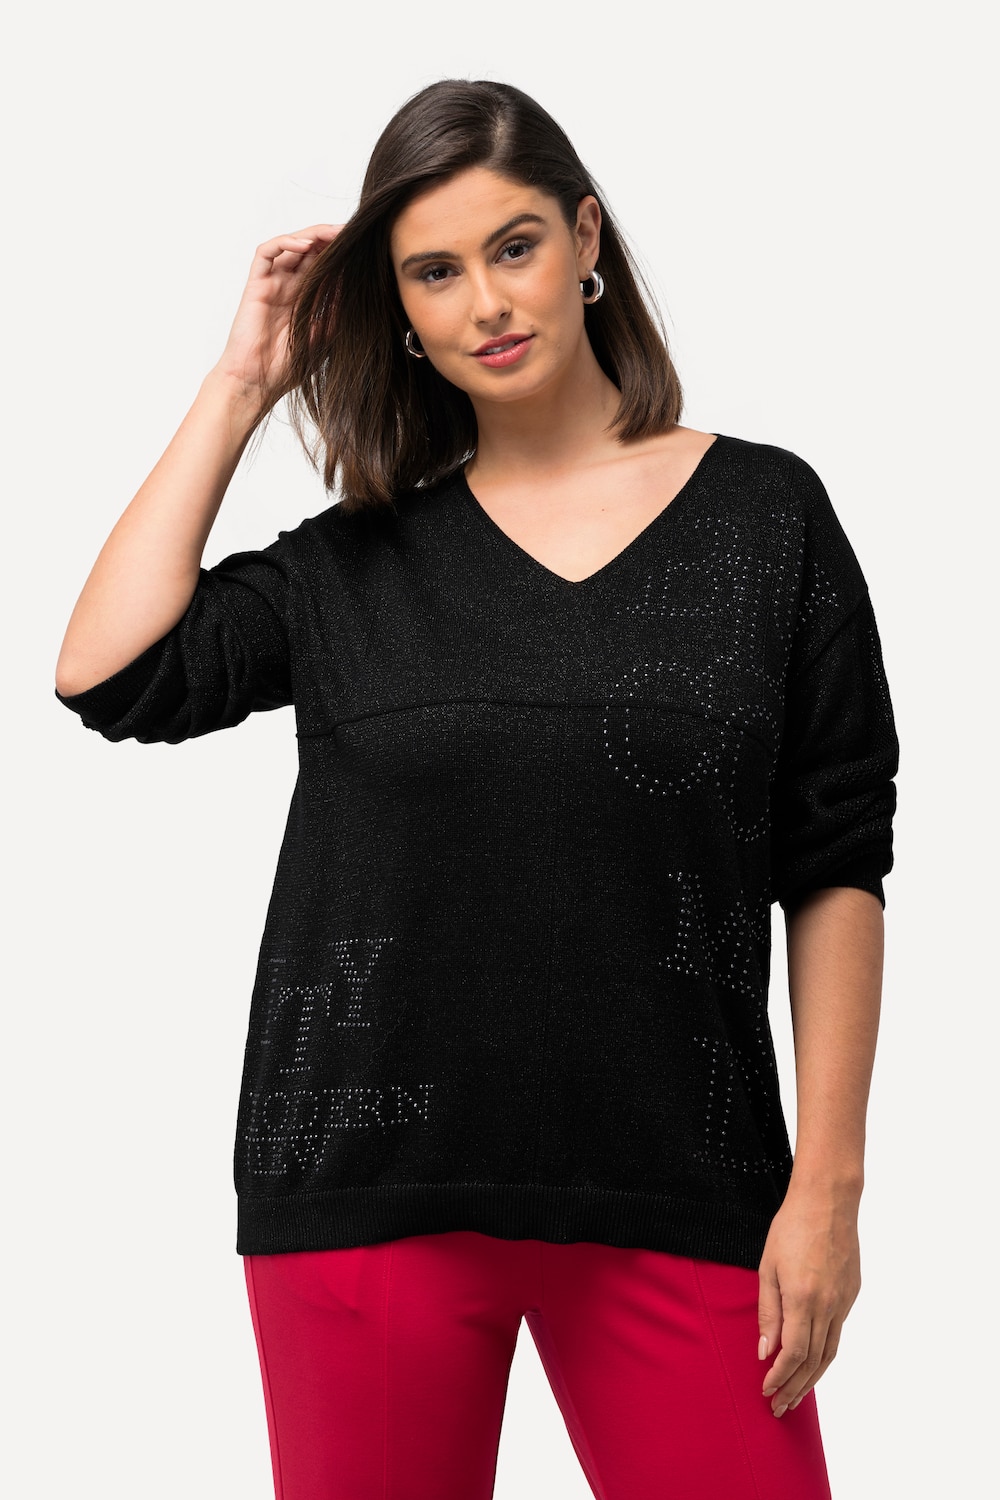 Große Größen Pullover, Damen, schwarz, Größe: 50/52, Baumwolle/Metallische Fasern, Ulla Popken von Ulla Popken